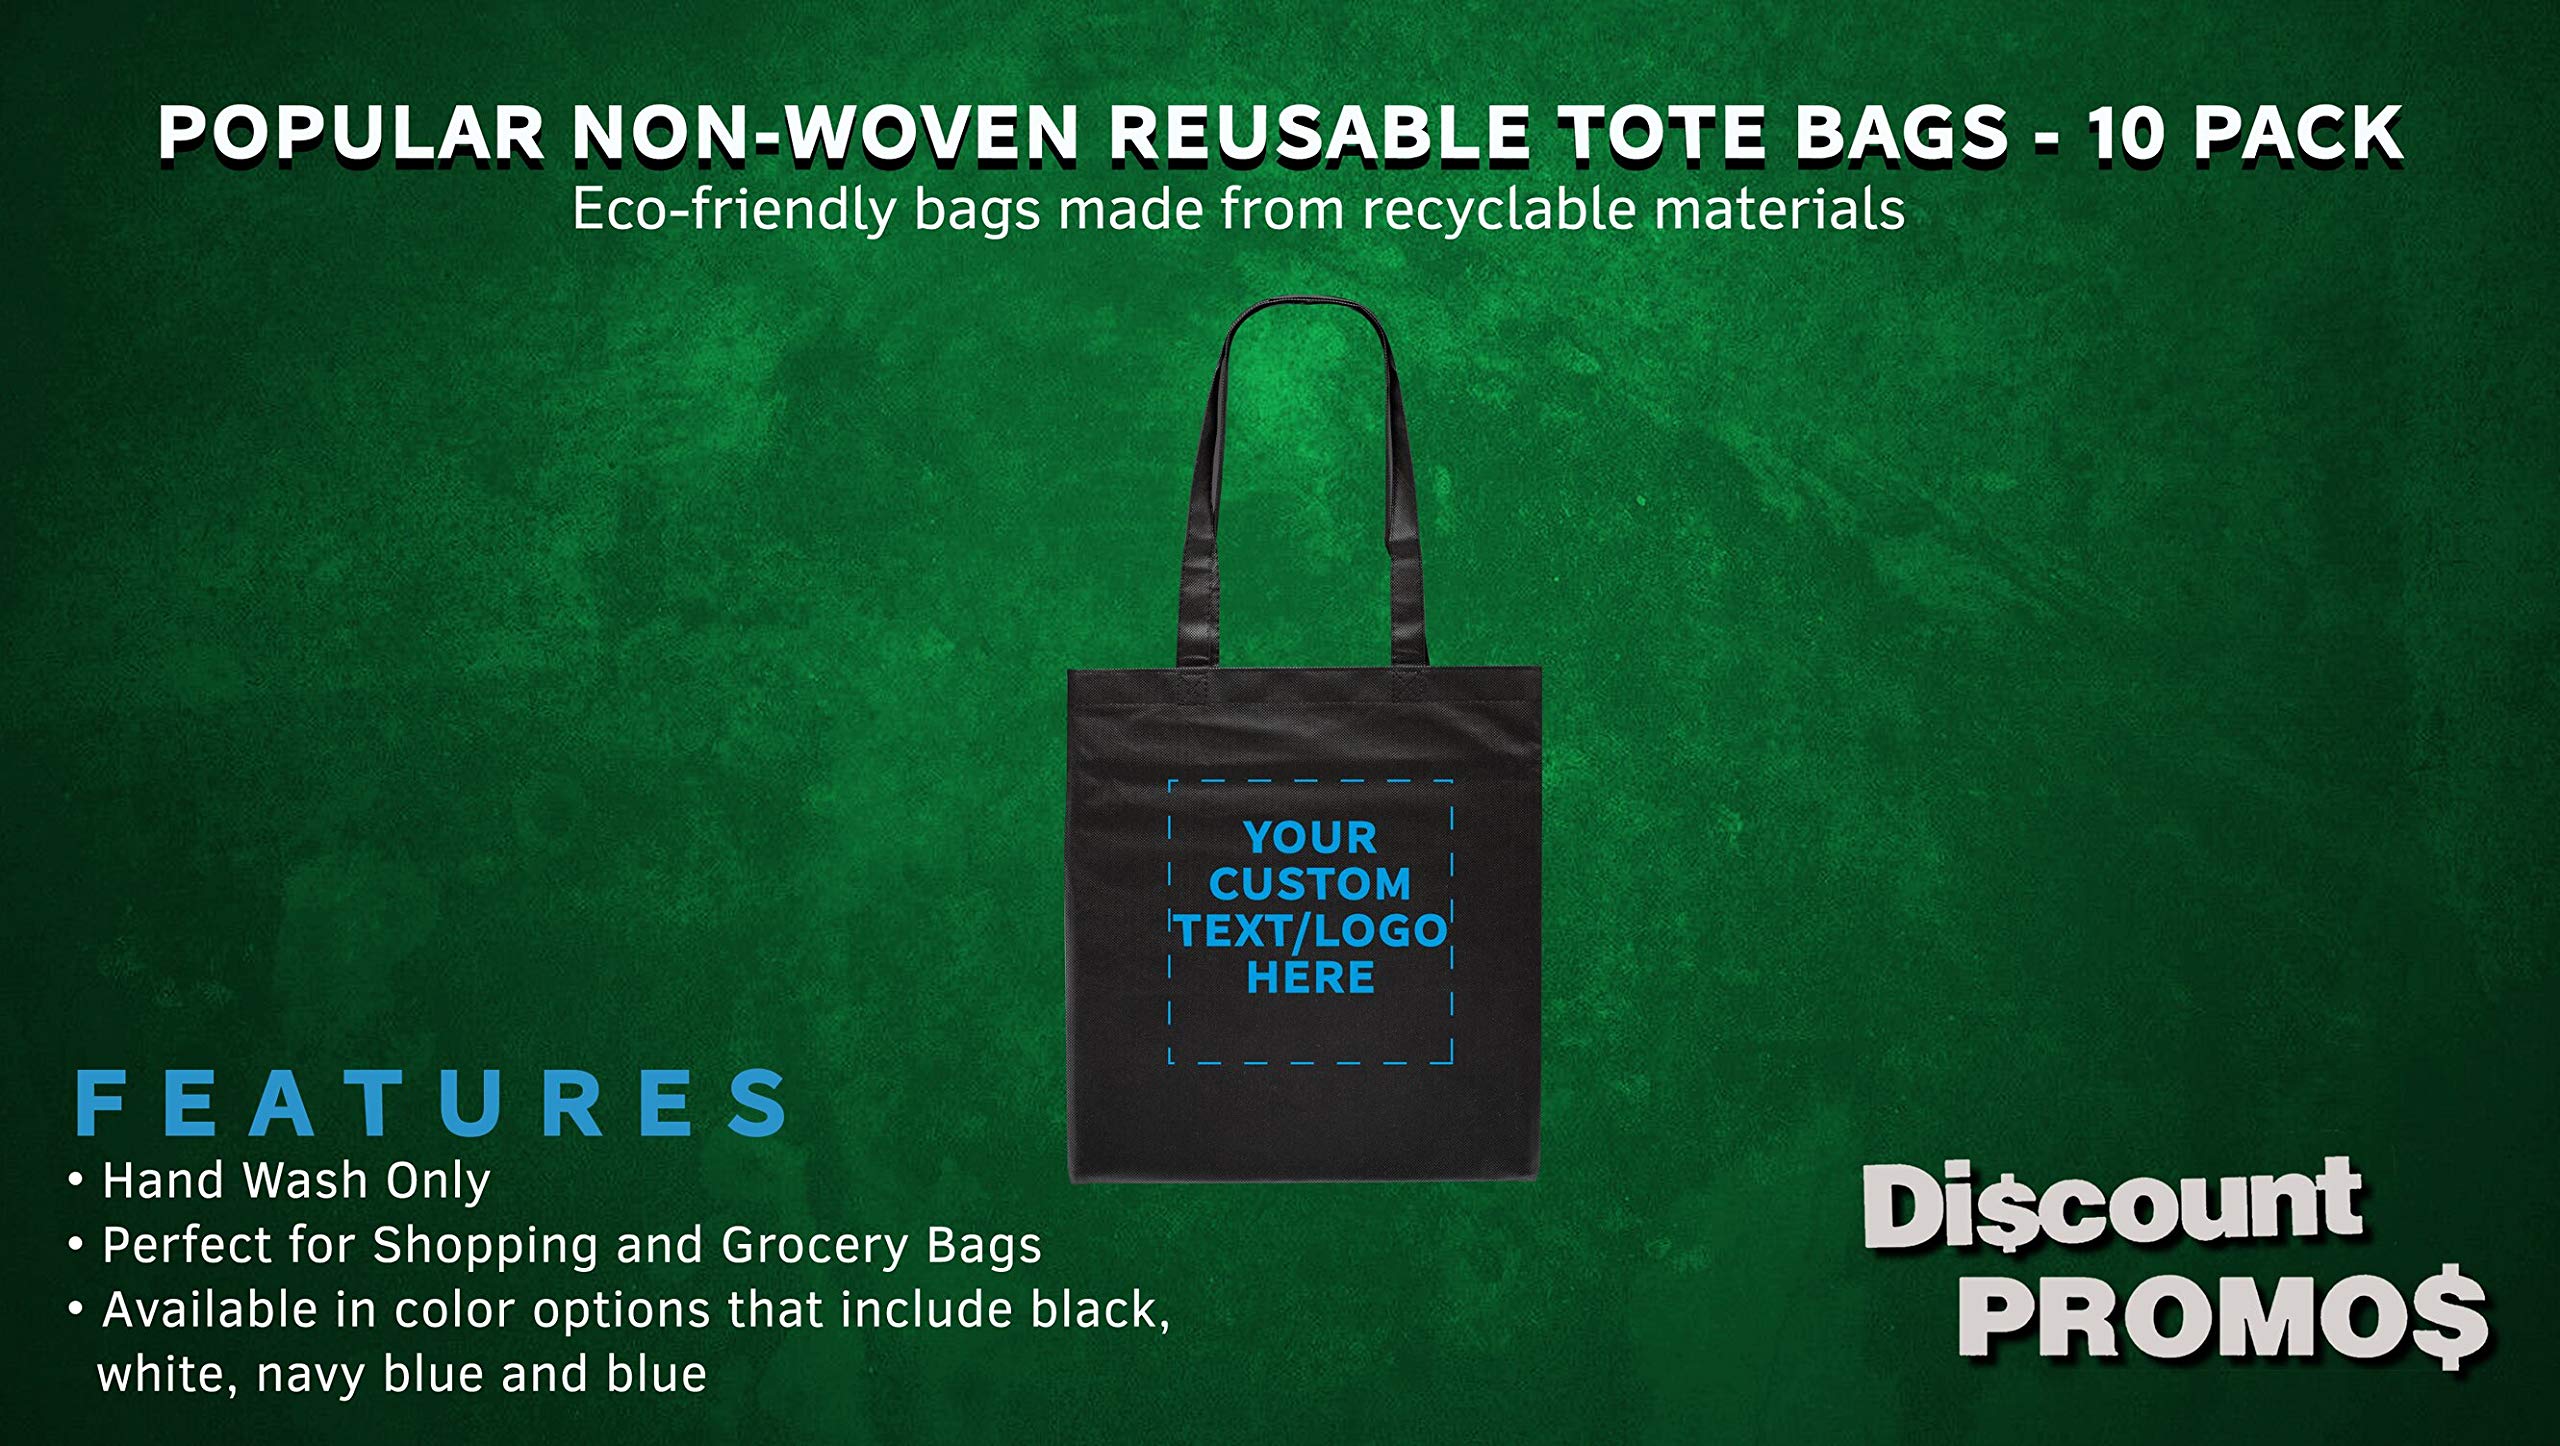 Tote Bags - Non-Woven Bag Totes - 10 pack - Customizable Text, Logo - Reusable Polypropylene Cloth Fabric - Black